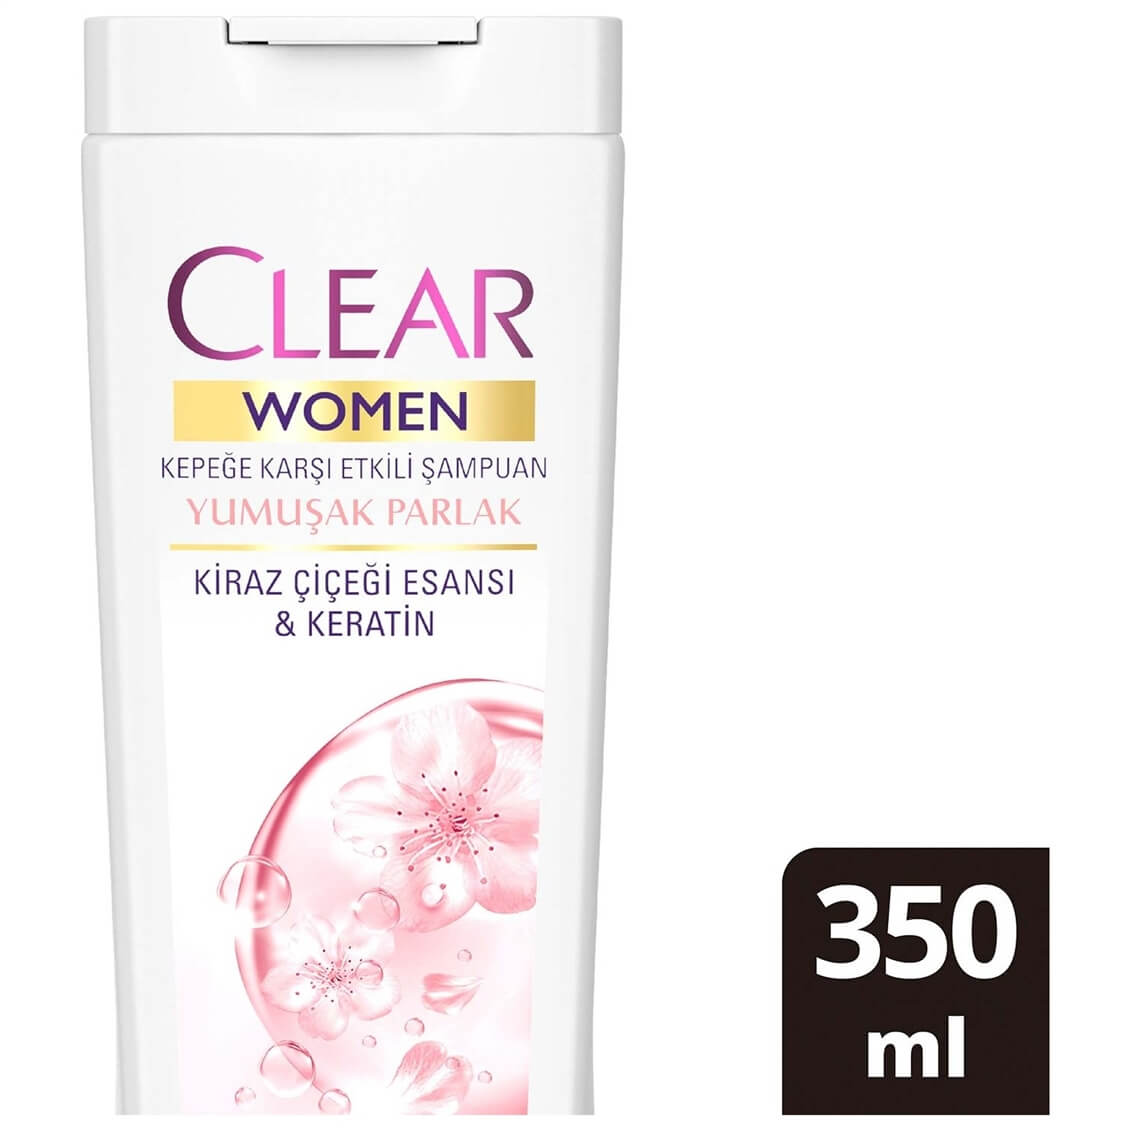 Clear Women Kepeğe Karşı Etkili Şampuan Yumuşak Parlak Kiraz Çiçeği Esansı  & Keratin 350 ml - Onur Market